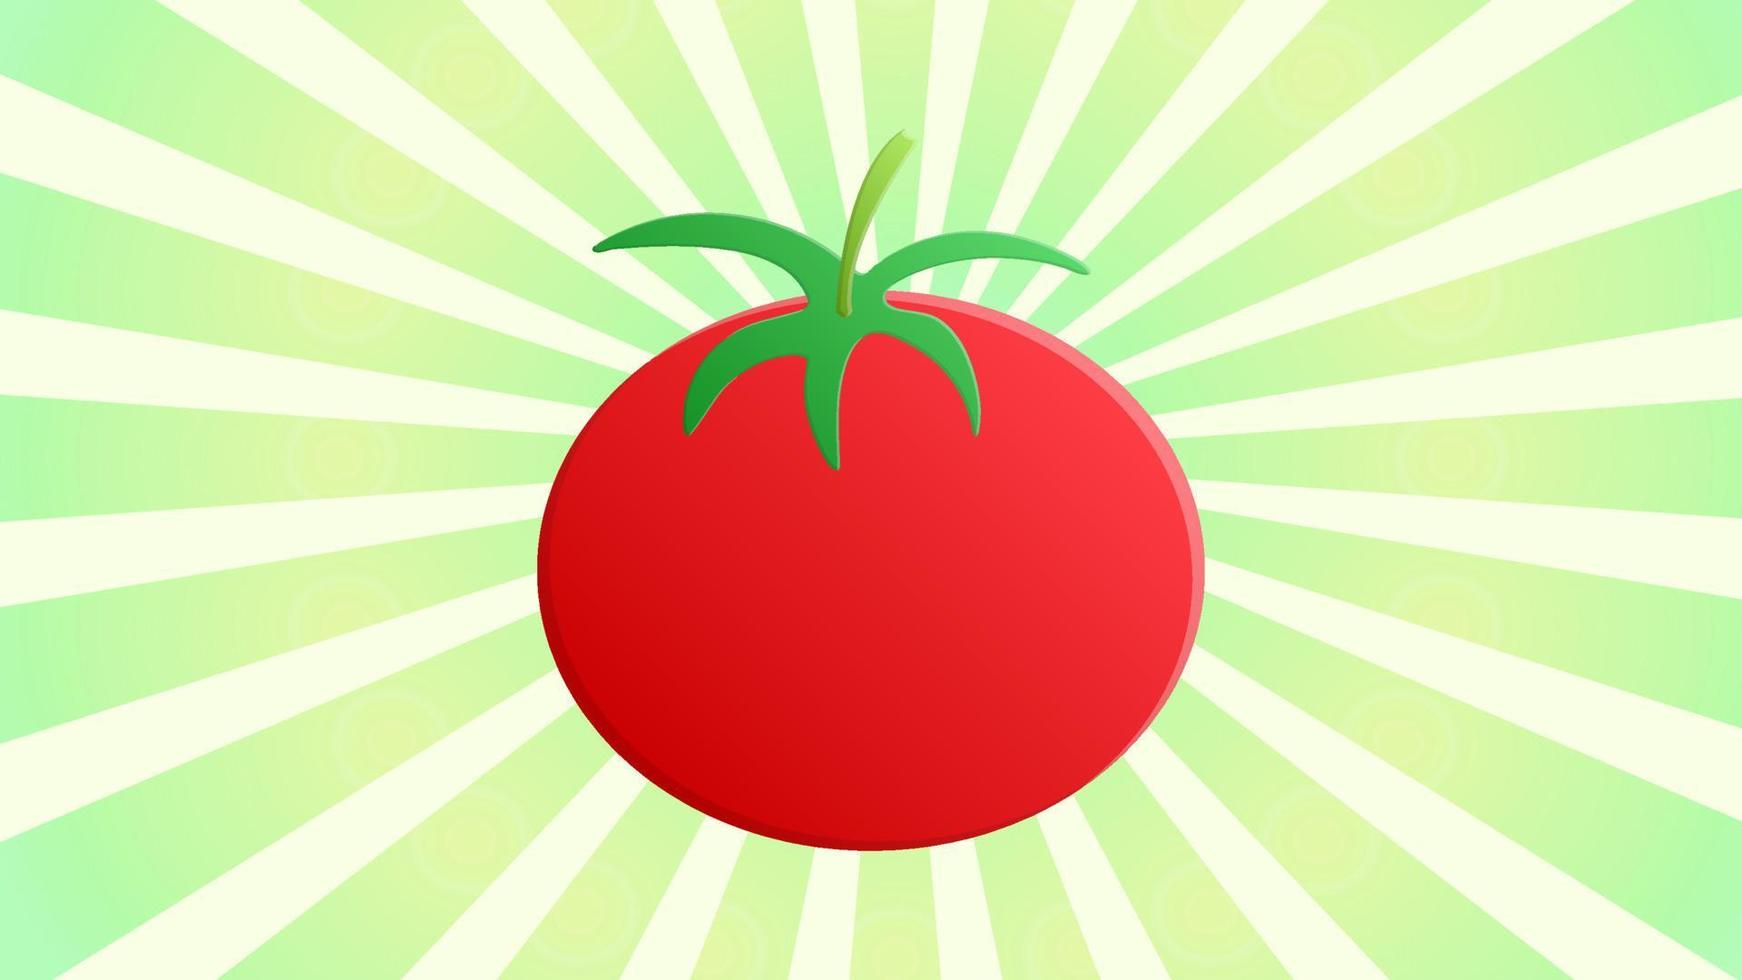 tomate sobre un fondo blanco-verde, ilustración vectorial. tomate apetitoso, ensalada fresca, comida sana. tomate jugoso para bajar de peso, vegetales brillantes y redondos vector